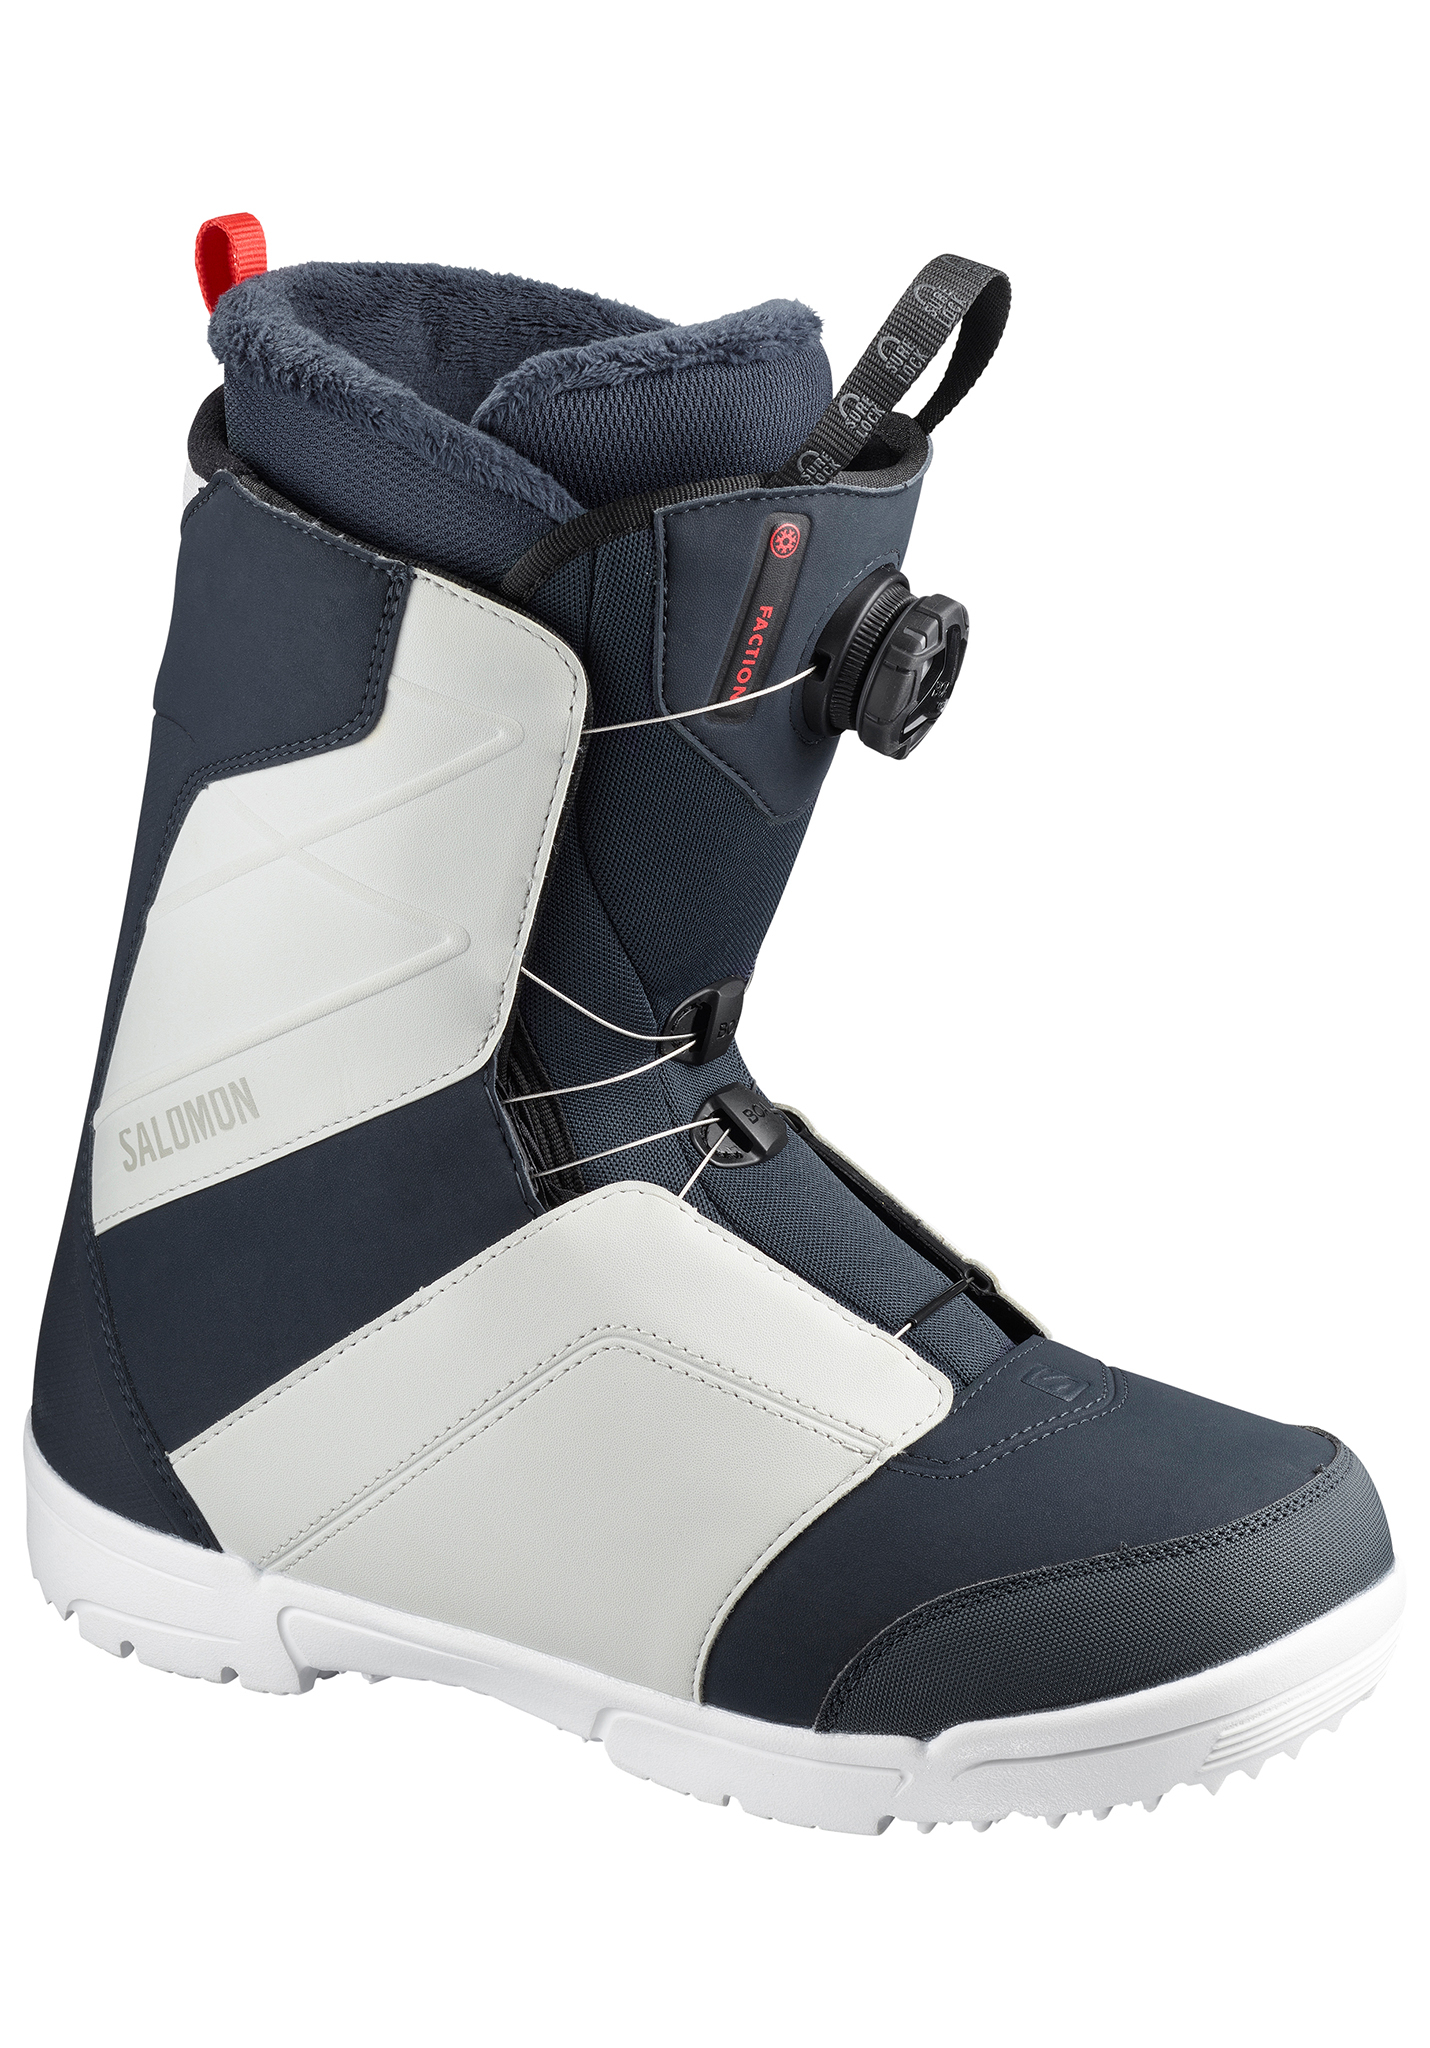 Salomon Faction Boa All Mountain Snowboard Boots black 47